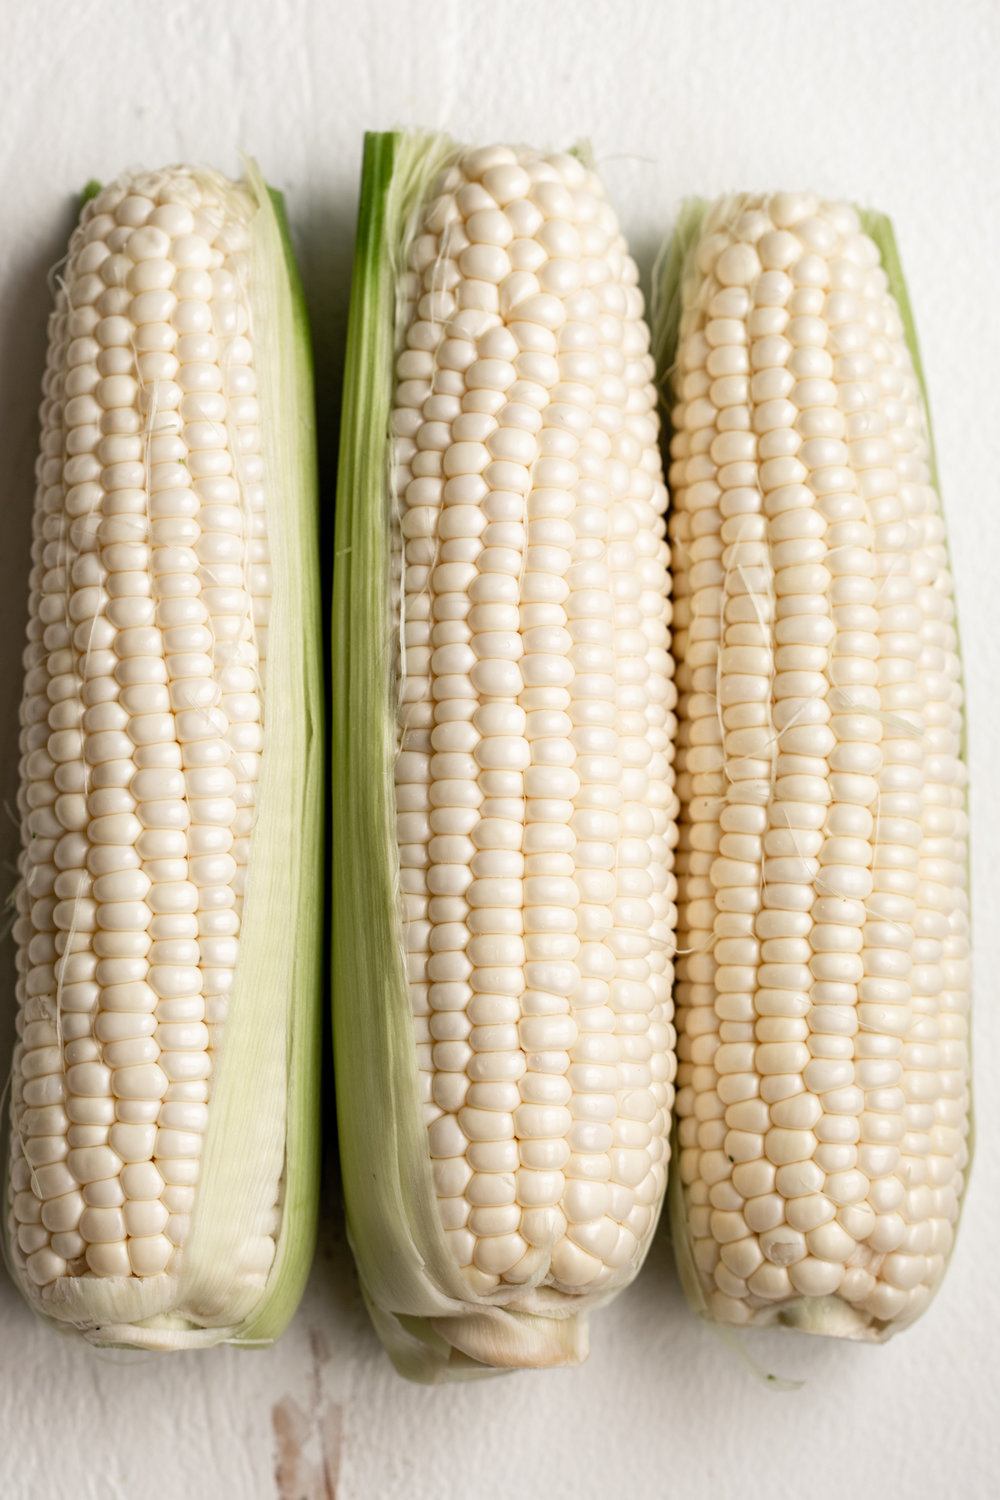 three ears of corn shucked